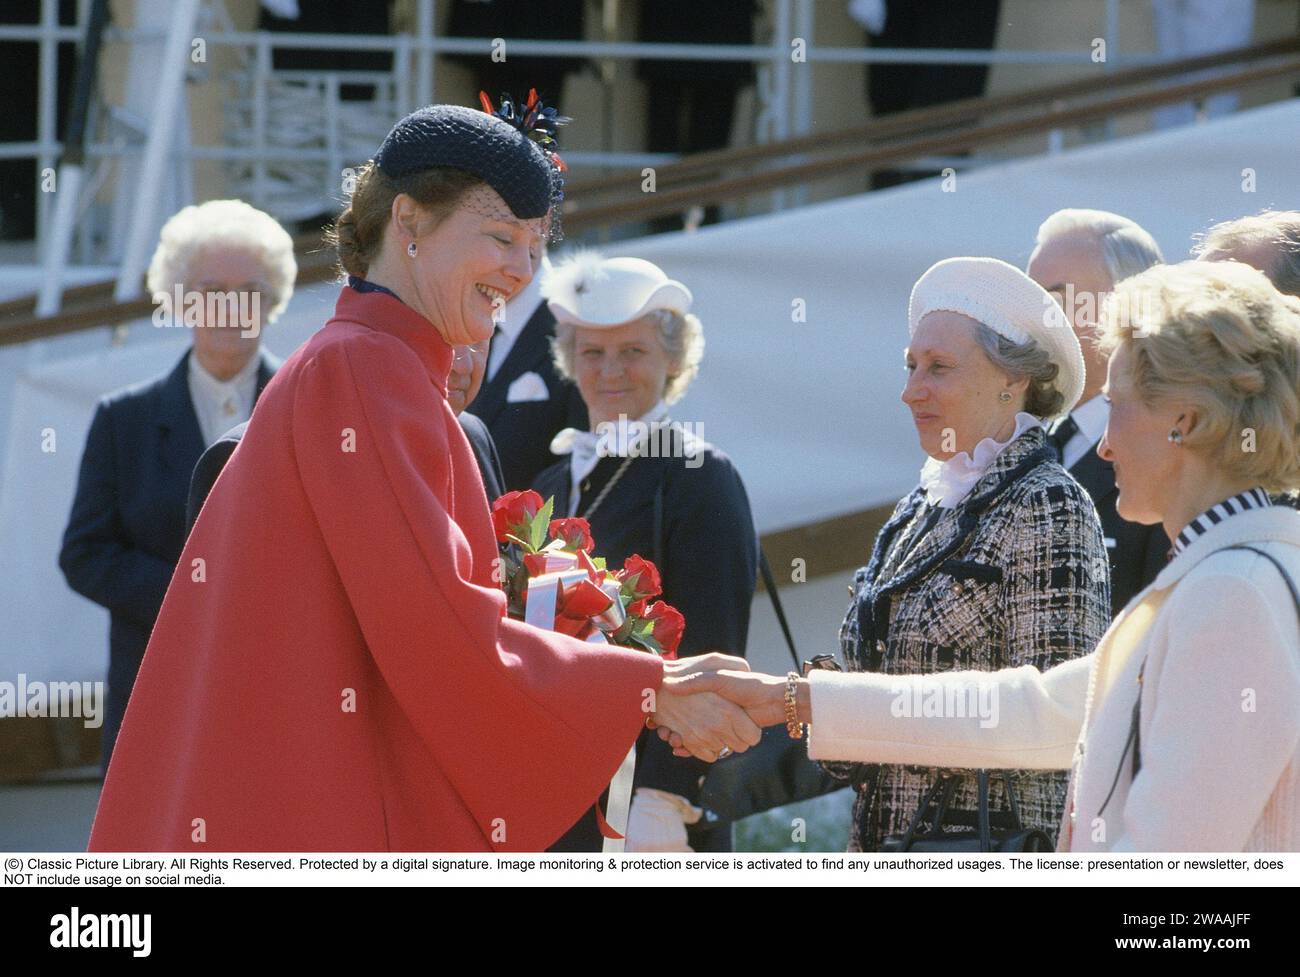 Königin Margrethe II. Von Dänemark. Auf dem Bild, als wir mit dem königlichen Schiff Dannebrogen nach Schweden gereist sind und willkommen geheißen werden. 1985 Stockfoto